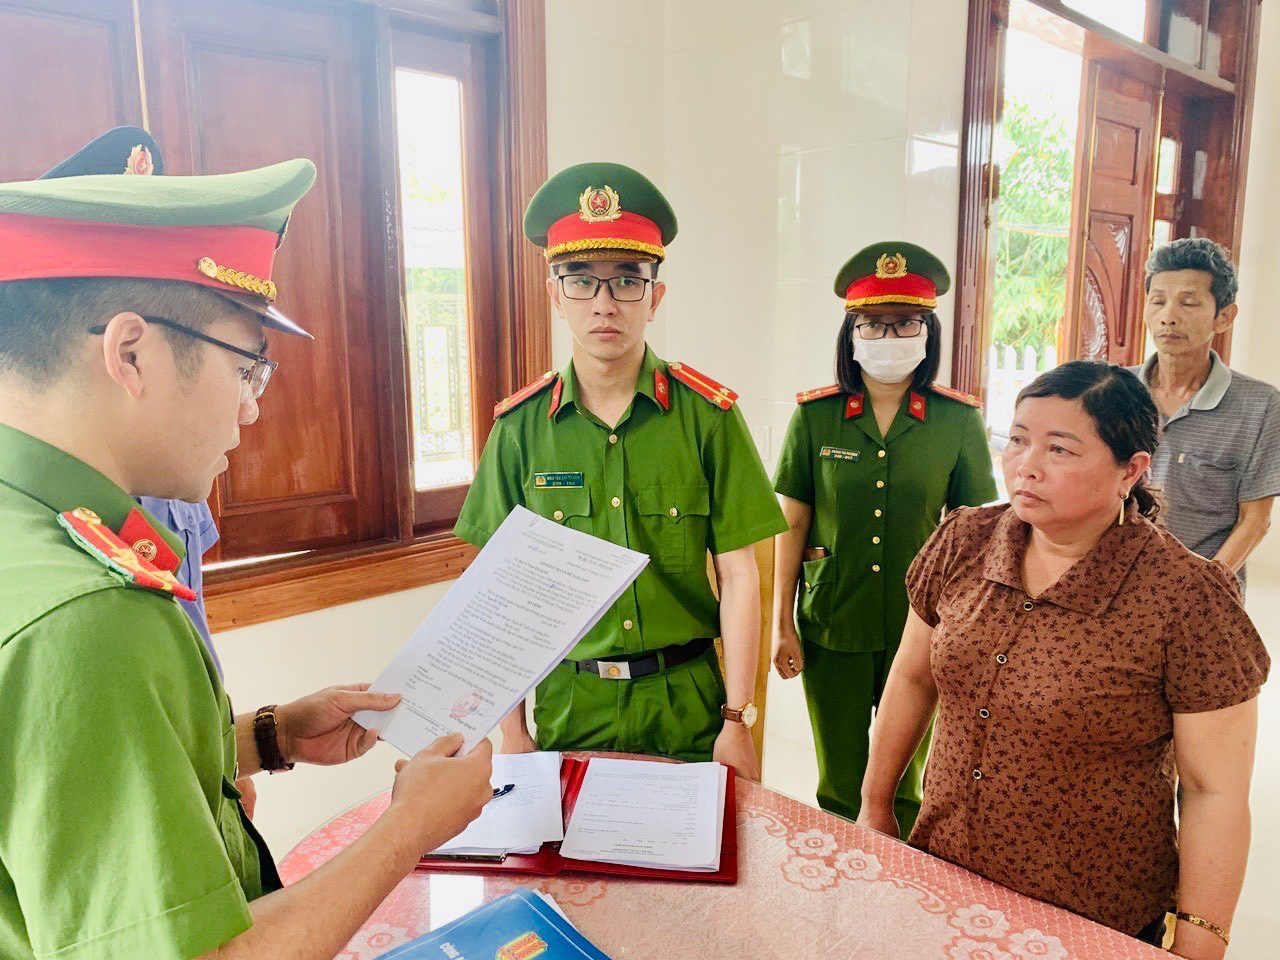 Giám đốc Hợp tác xã ở Quảng Bình bị khởi tố tội tham ô tài sản - Ảnh 1.